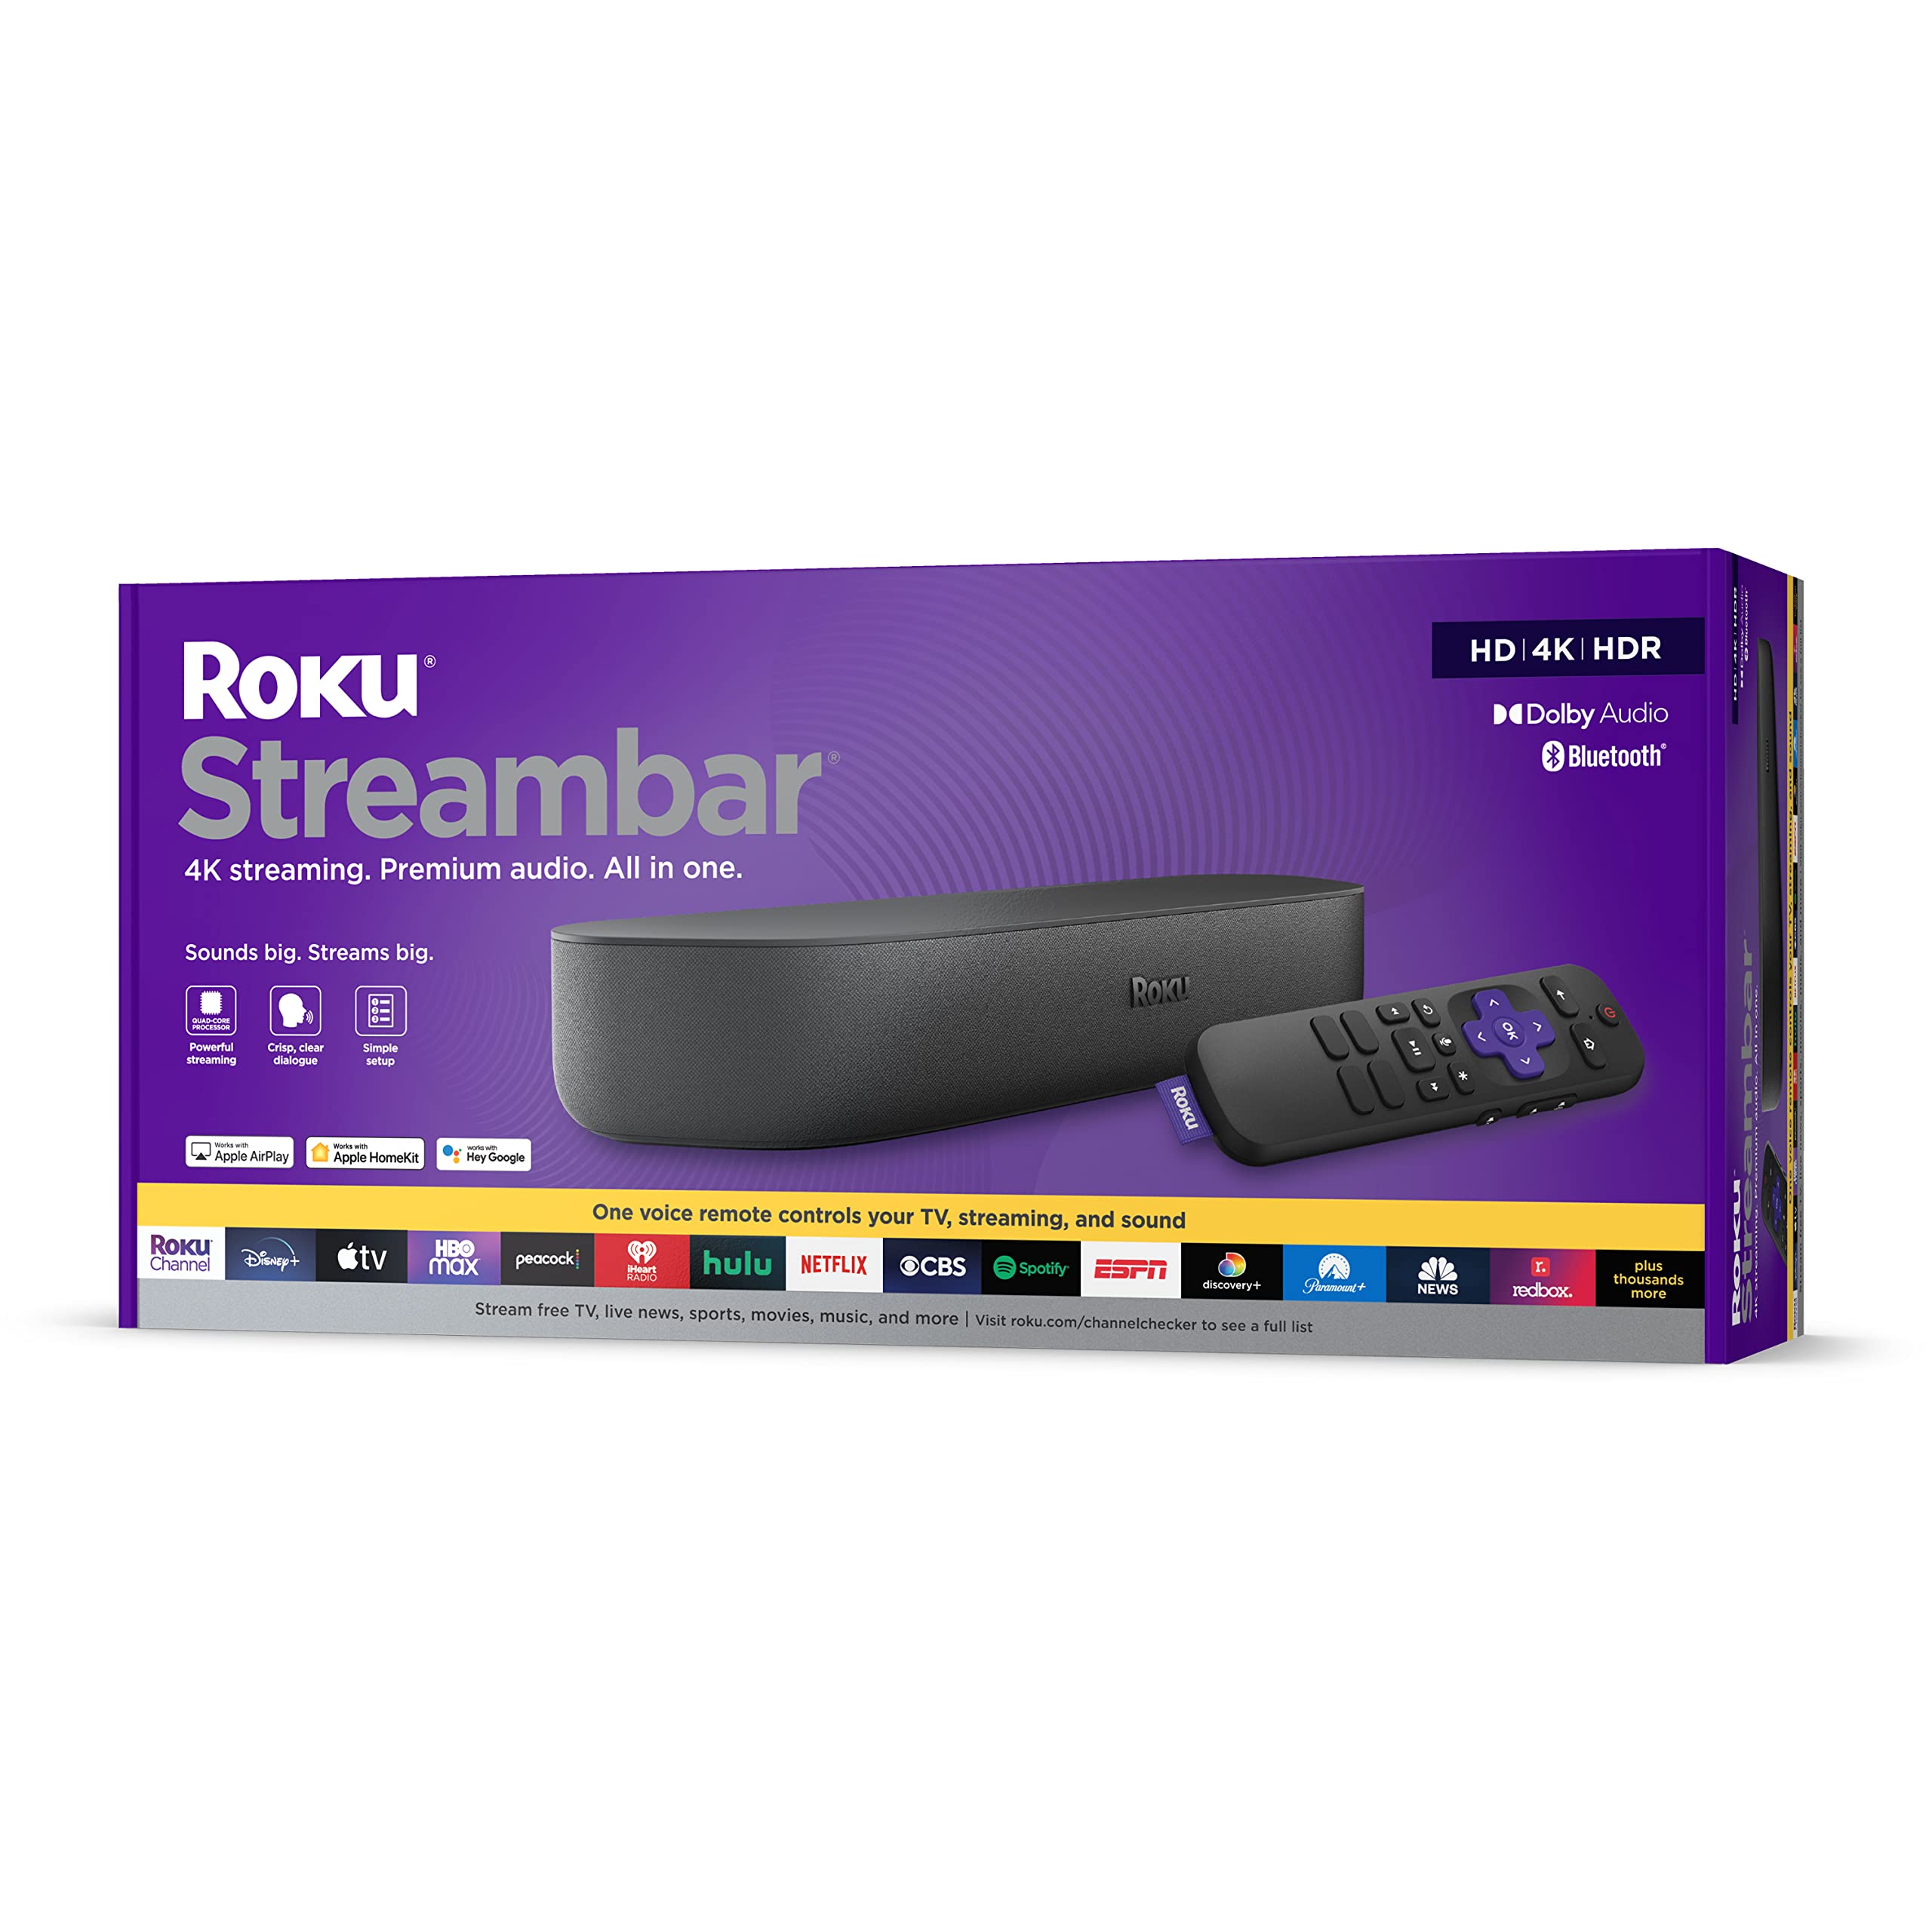 Roku ストリームバー | 4K/HD/HDR ストリーミング メディア プレーヤー & プレミアム オーディオ、オールインワン、音声リモコン付属